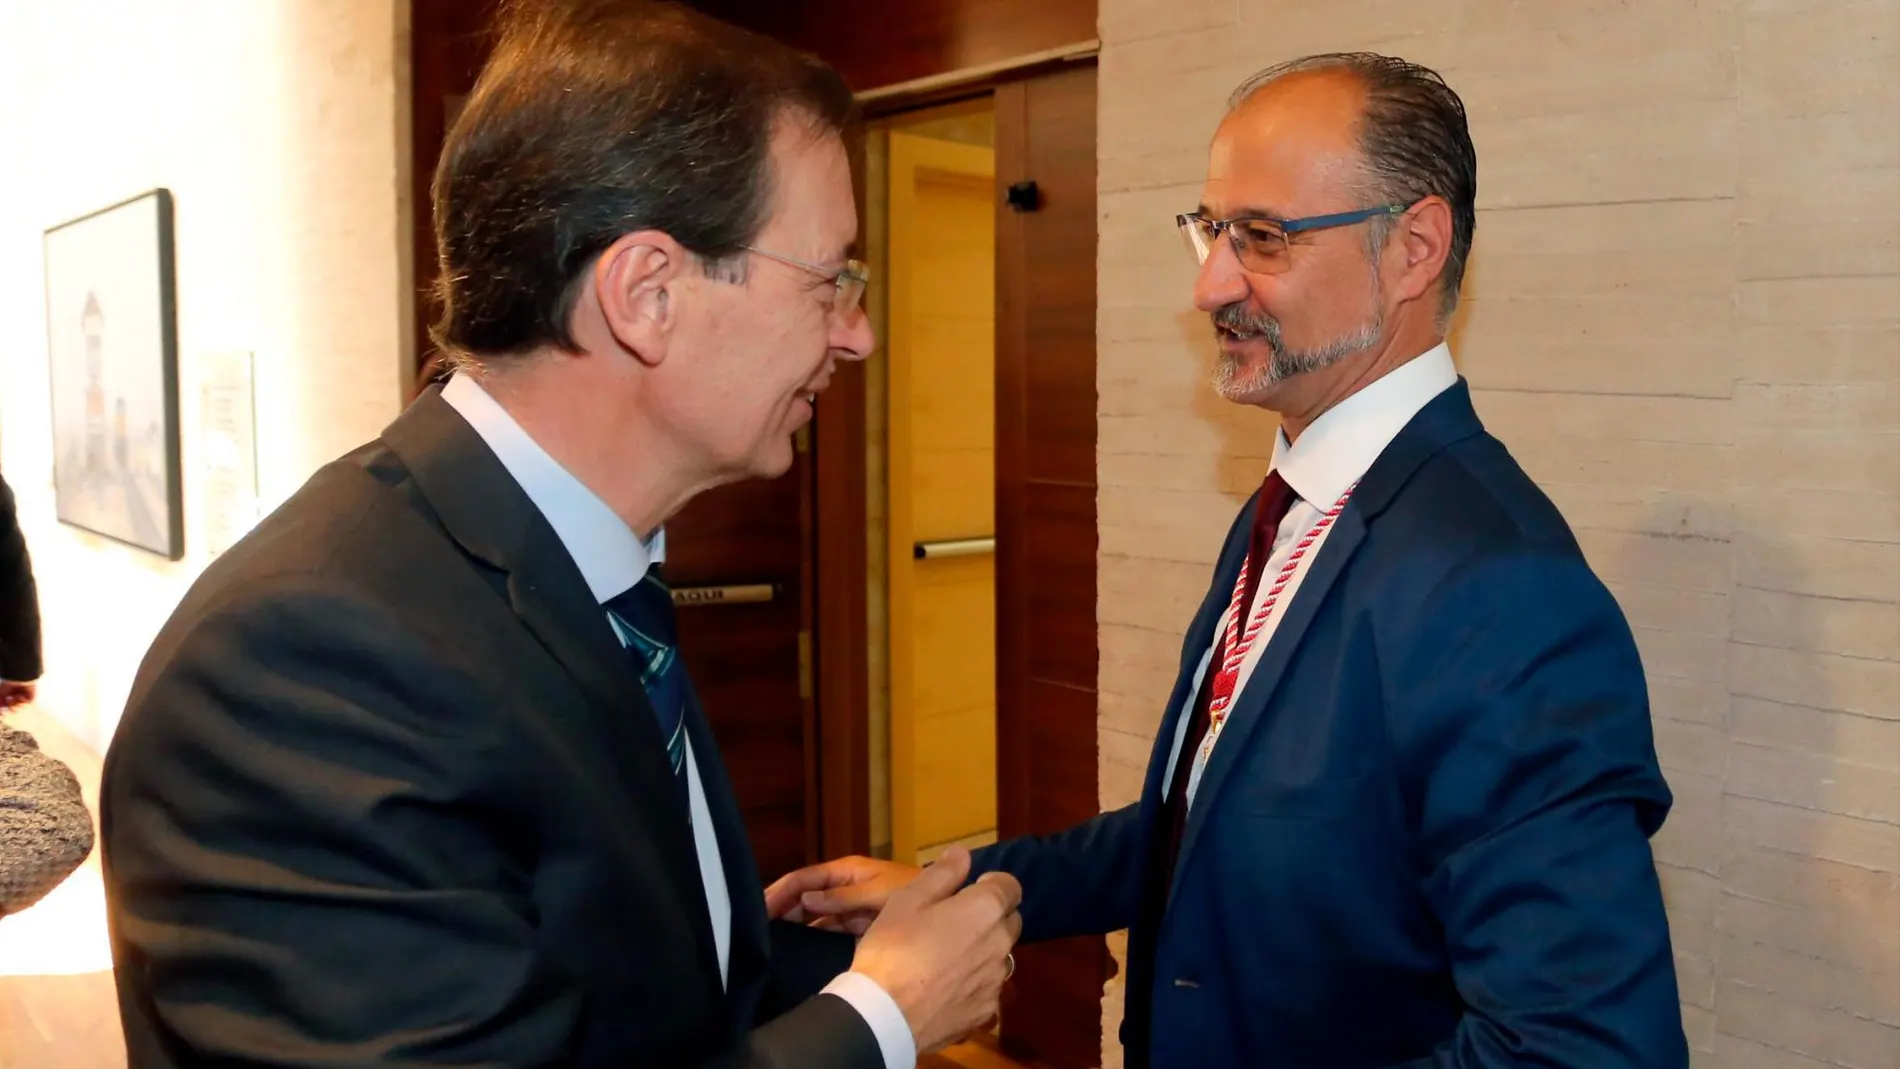 El presidente del CES de Castilla y León, Germán Barrios, saluda al recién elegido presidente del Parlamento autonómico, Luis Fuentes